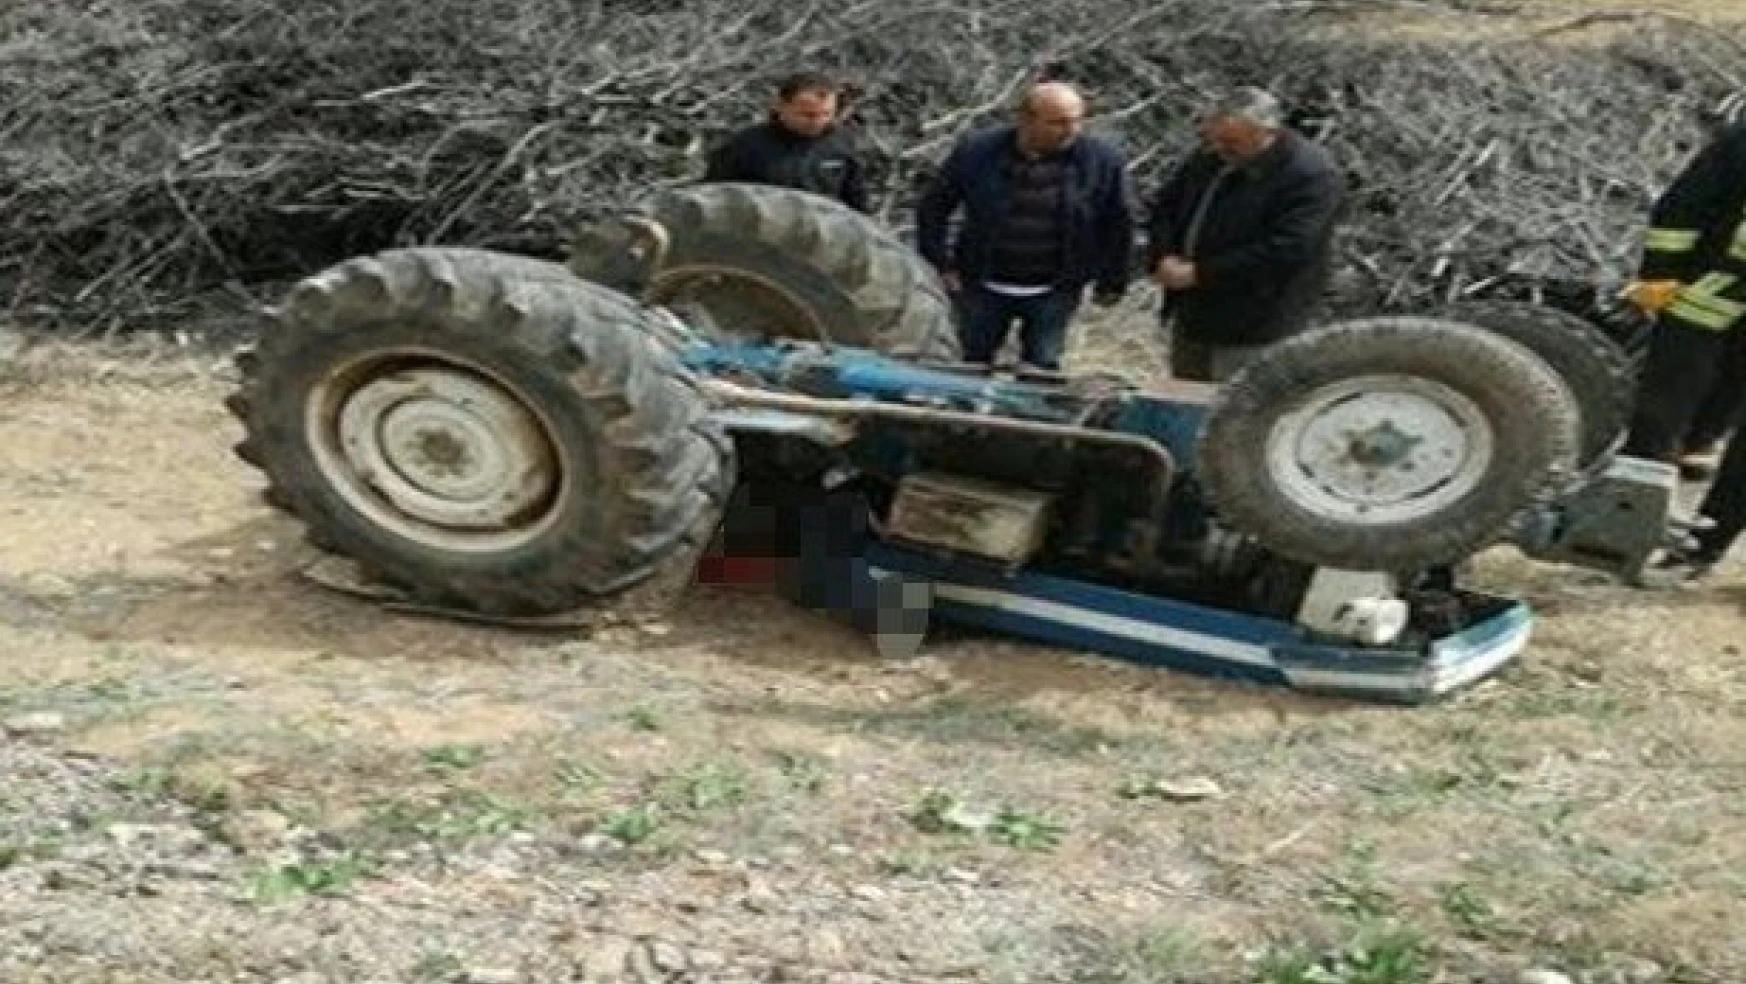 Akçadağ'da traktör devrildi: 1 ölü